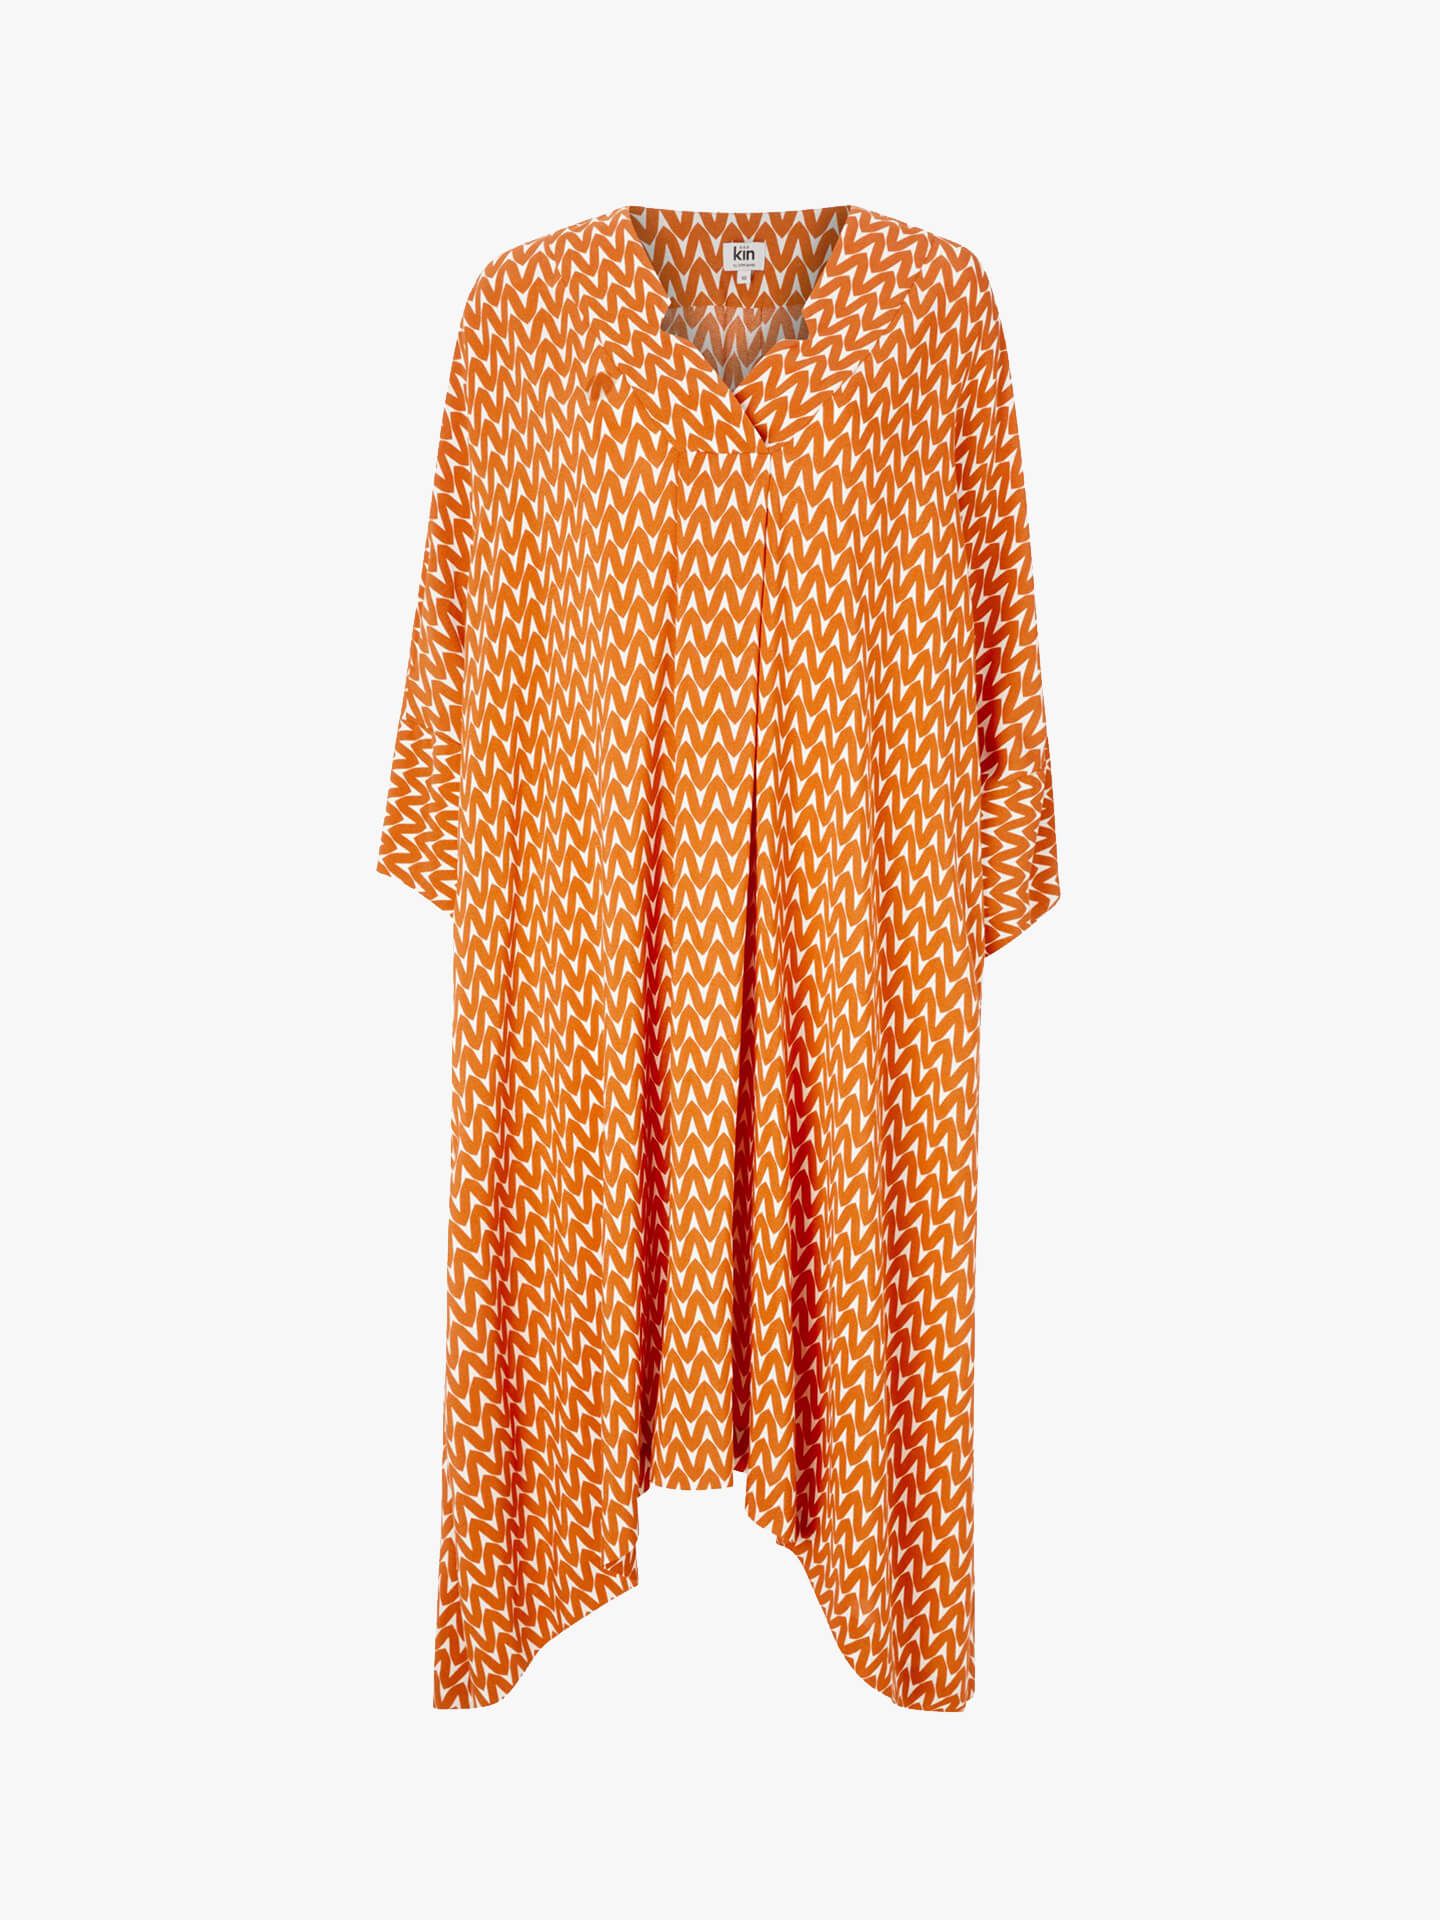 Kin Chaen Lantern Dress, Orange